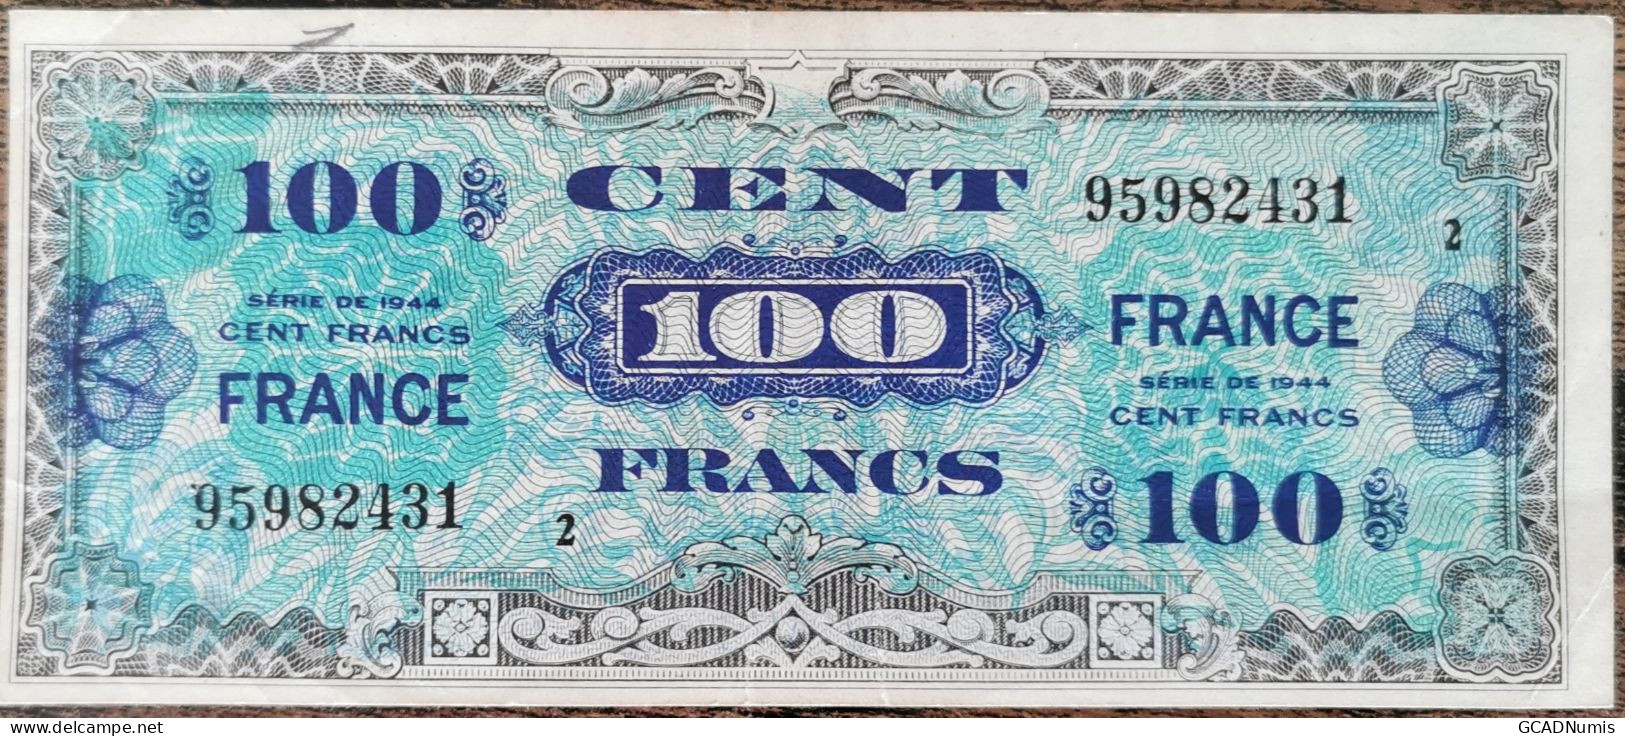 Billet 100 Francs 1944 FRANCE Préparer Par Les USA Pour La Libération Série 2 - 1944 Drapeau/France